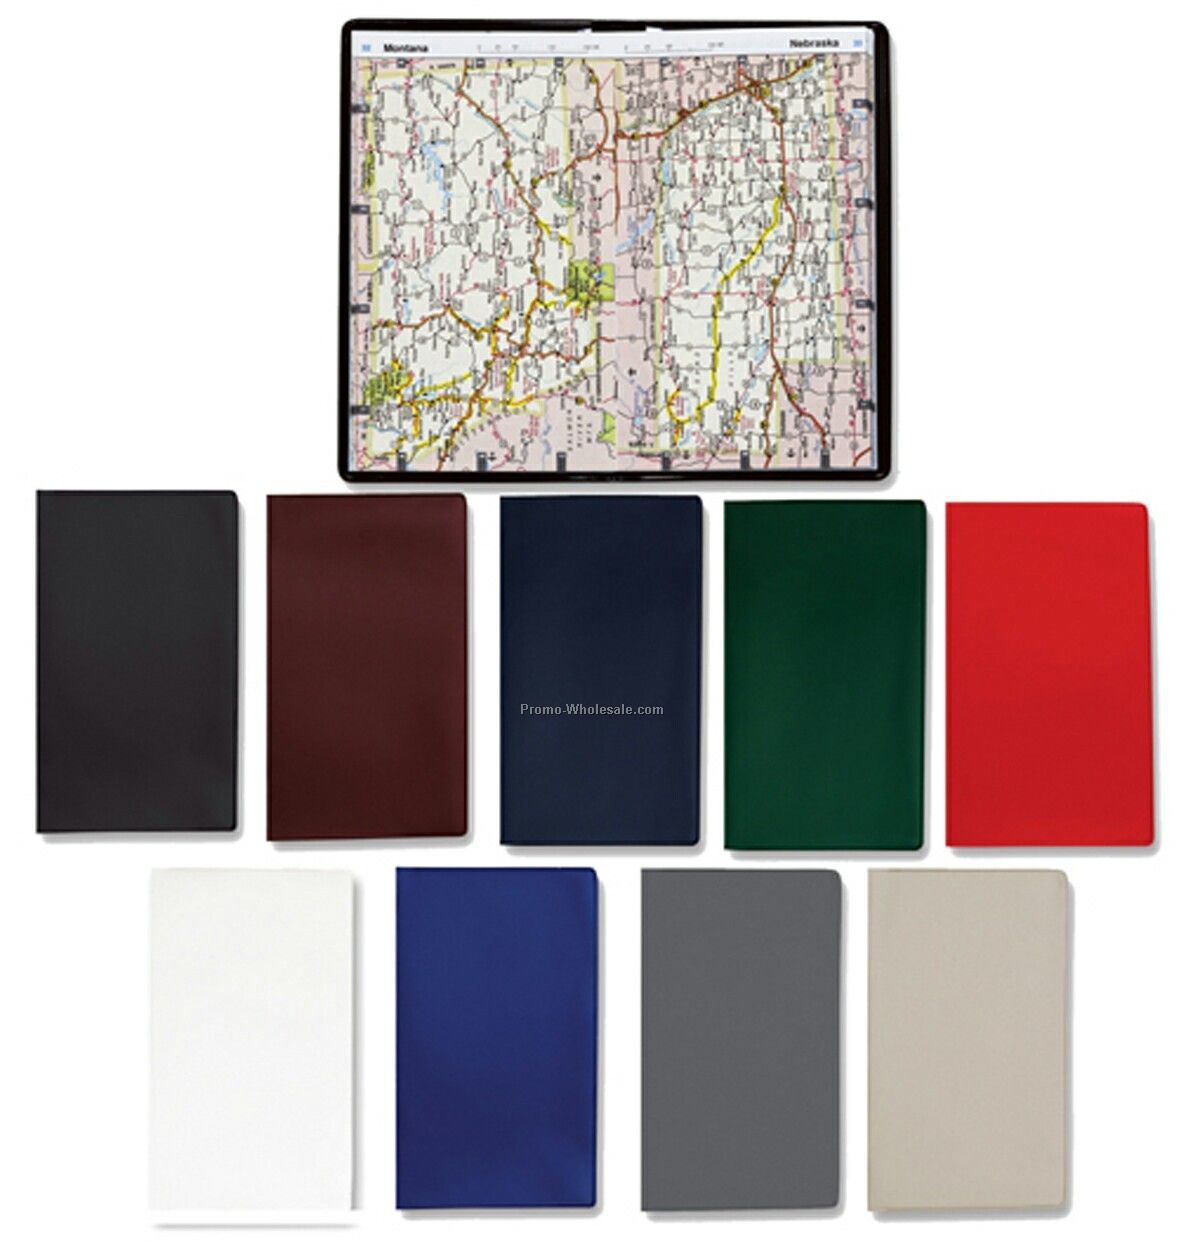 General Diaries - Pocket Road Atlas